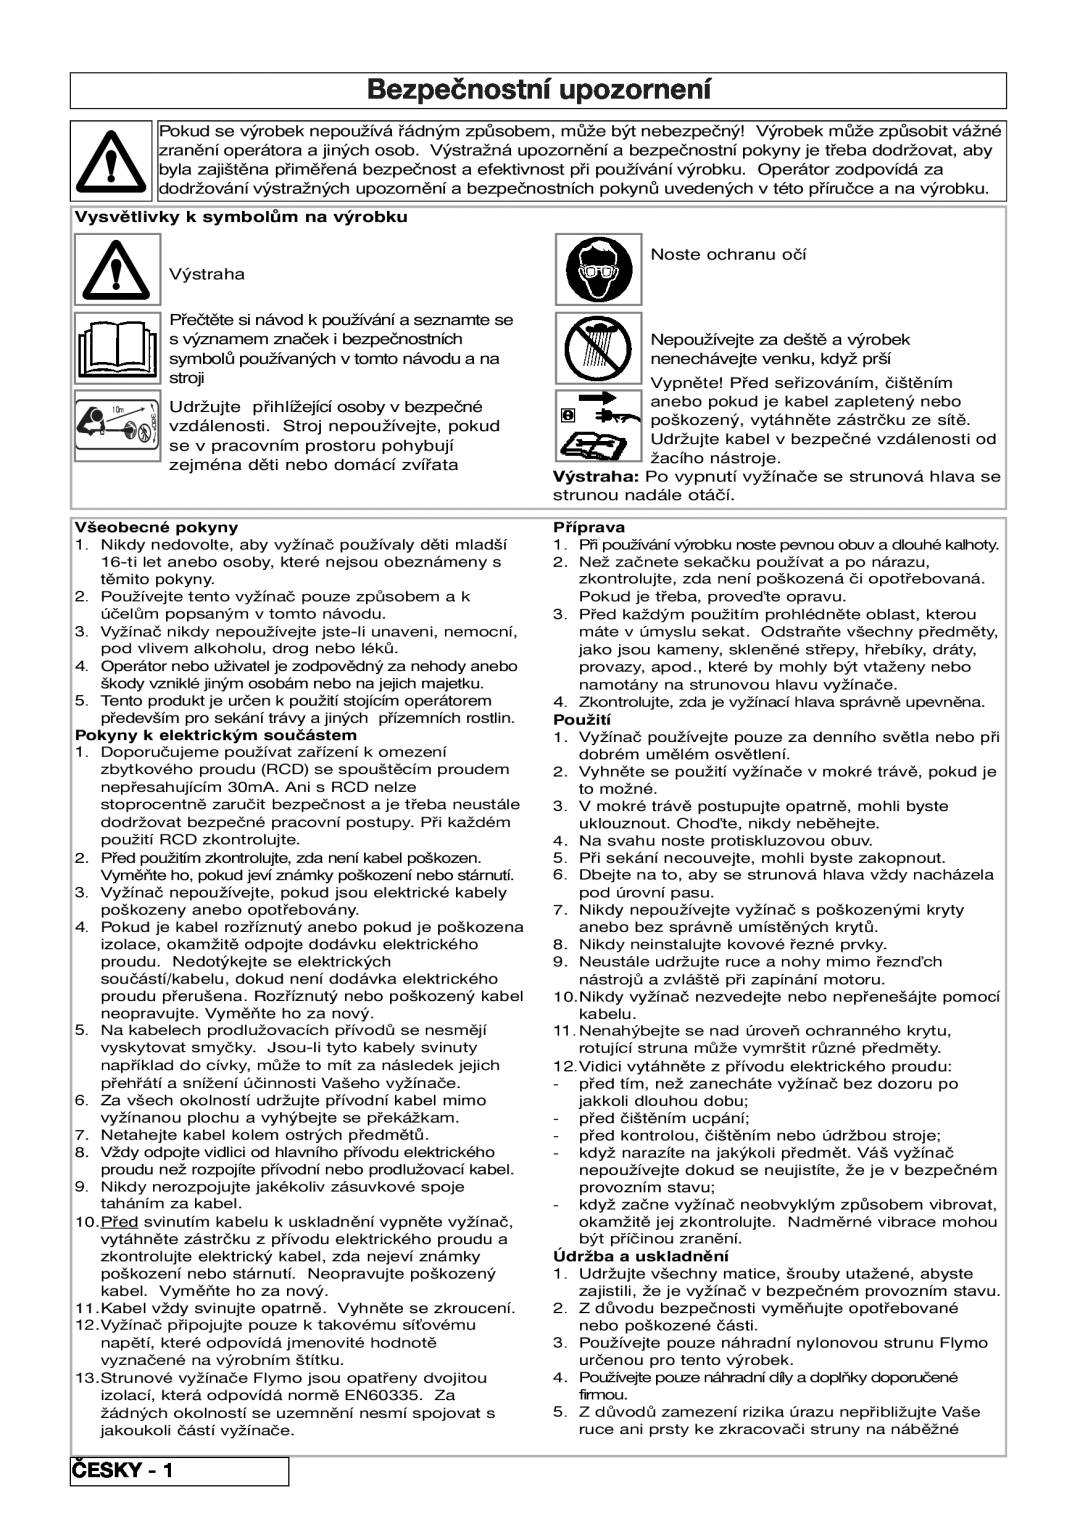 Flymo 800/1000 manual Bezpečnostní upozornení, Česky, Vysvětlivky k symbolům na výrobku 